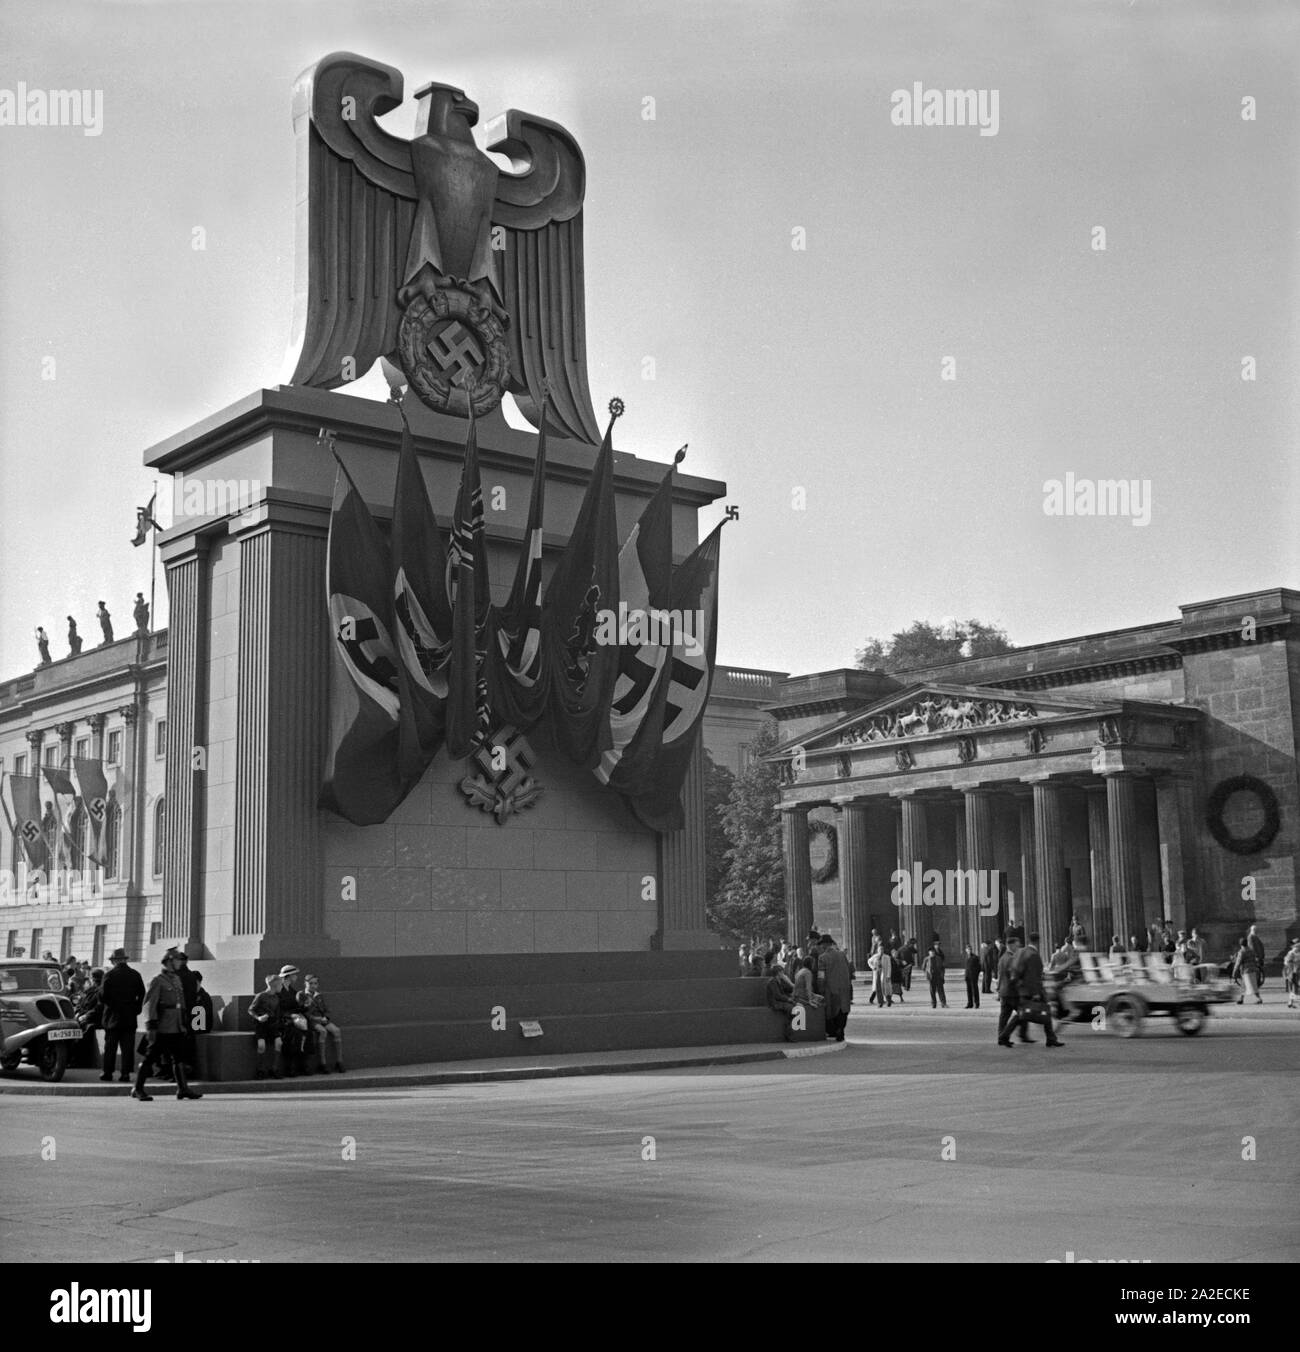 Reichsadler mit Hoheitszeichen als Denkmal auf einem Platz in Berlin (?), Deutschland 1930er Jahre. Eagle with swastika as a monument on a square at Berlin (?), Germany 1930s. Stock Photo